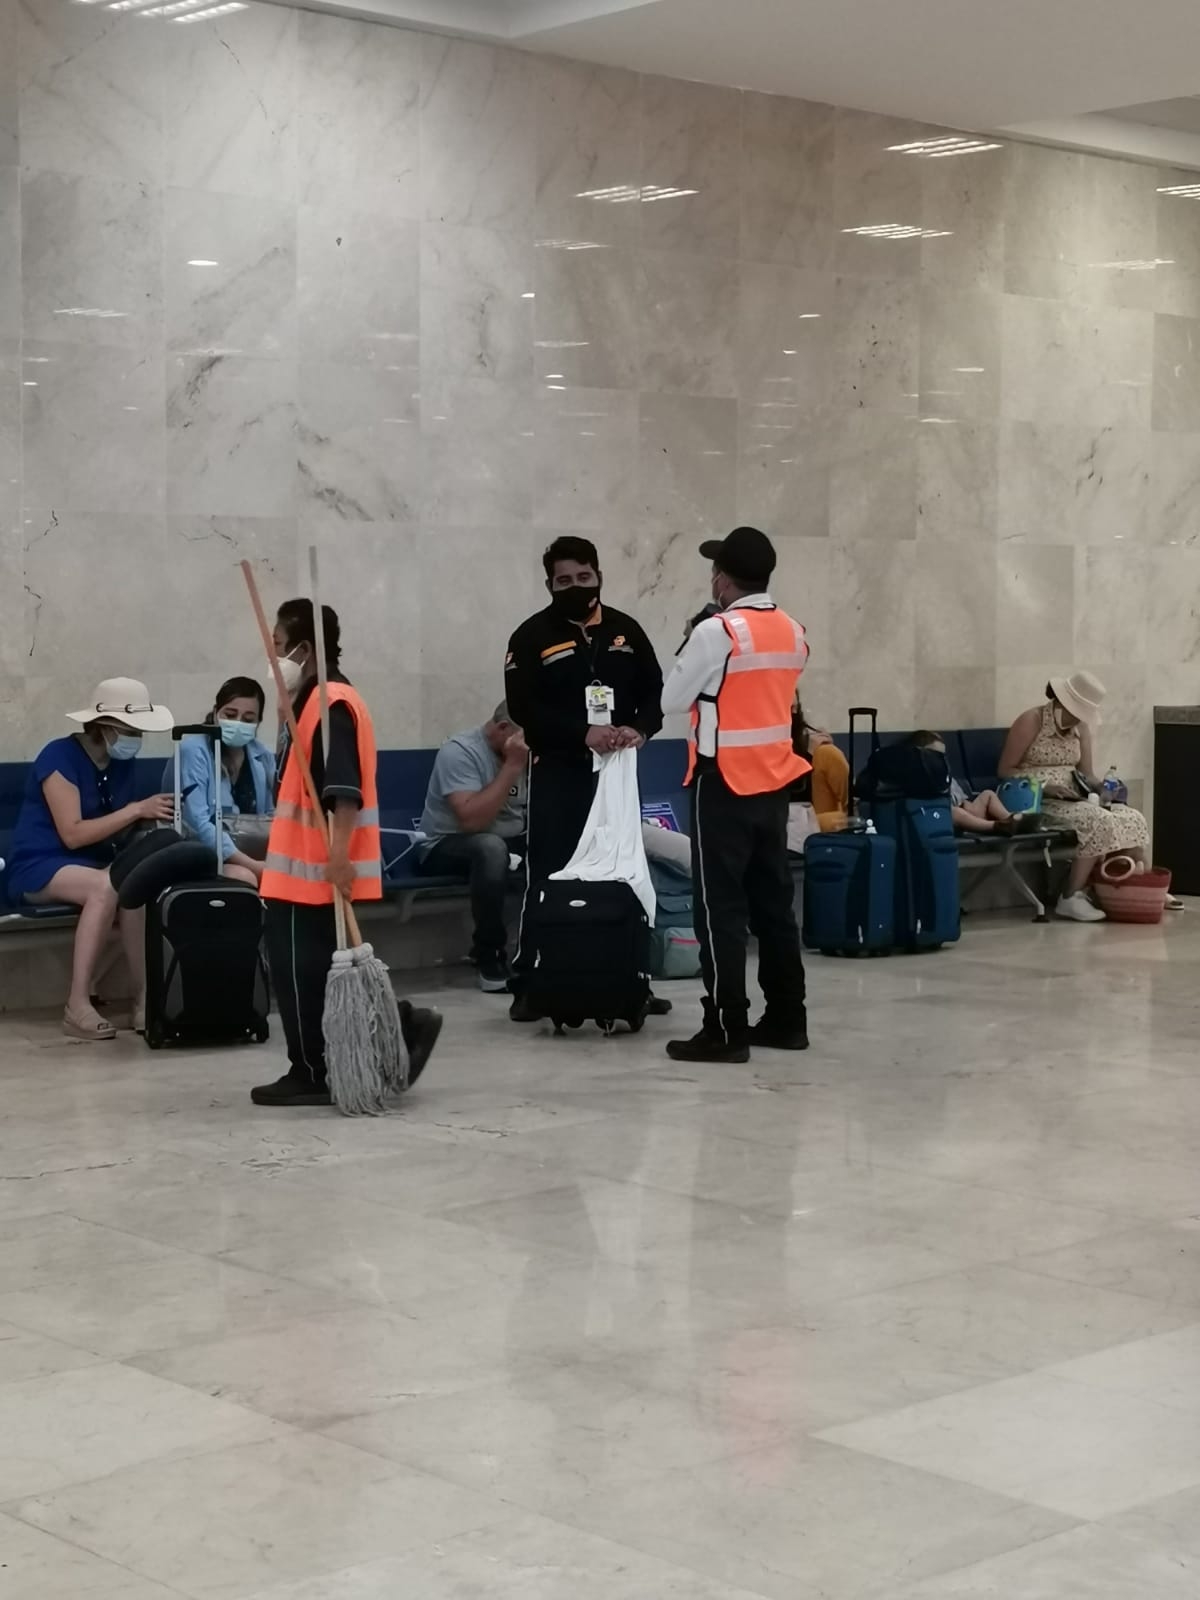 Seguridad resguarda equipaje 'sospechoso' abandonado en el aeropuerto de Cancún